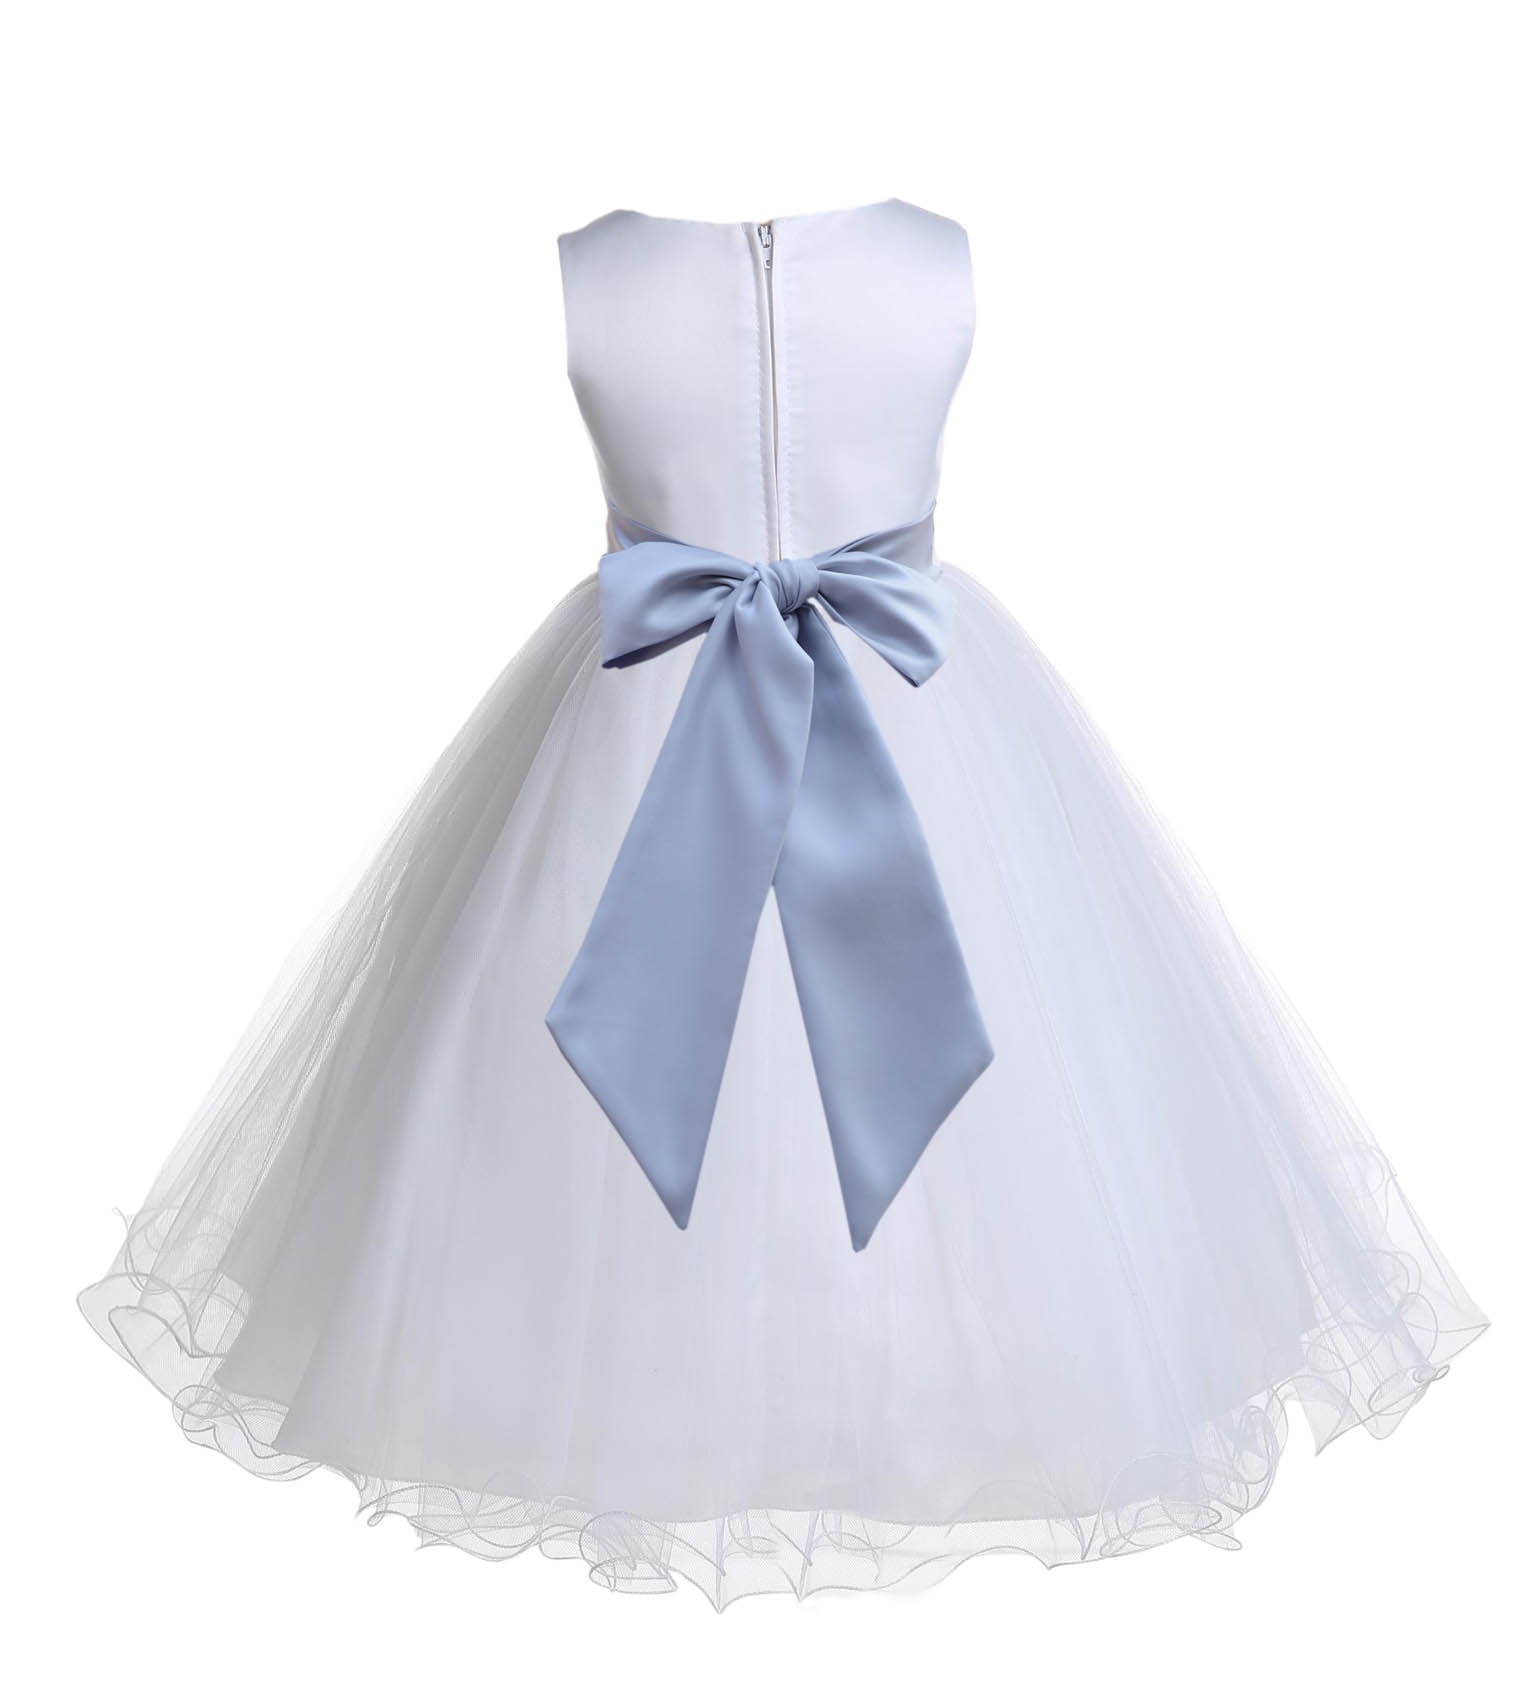 White/Silver Tulle Rattail Edge Flower Girl Dress Wedding Bridal 829S